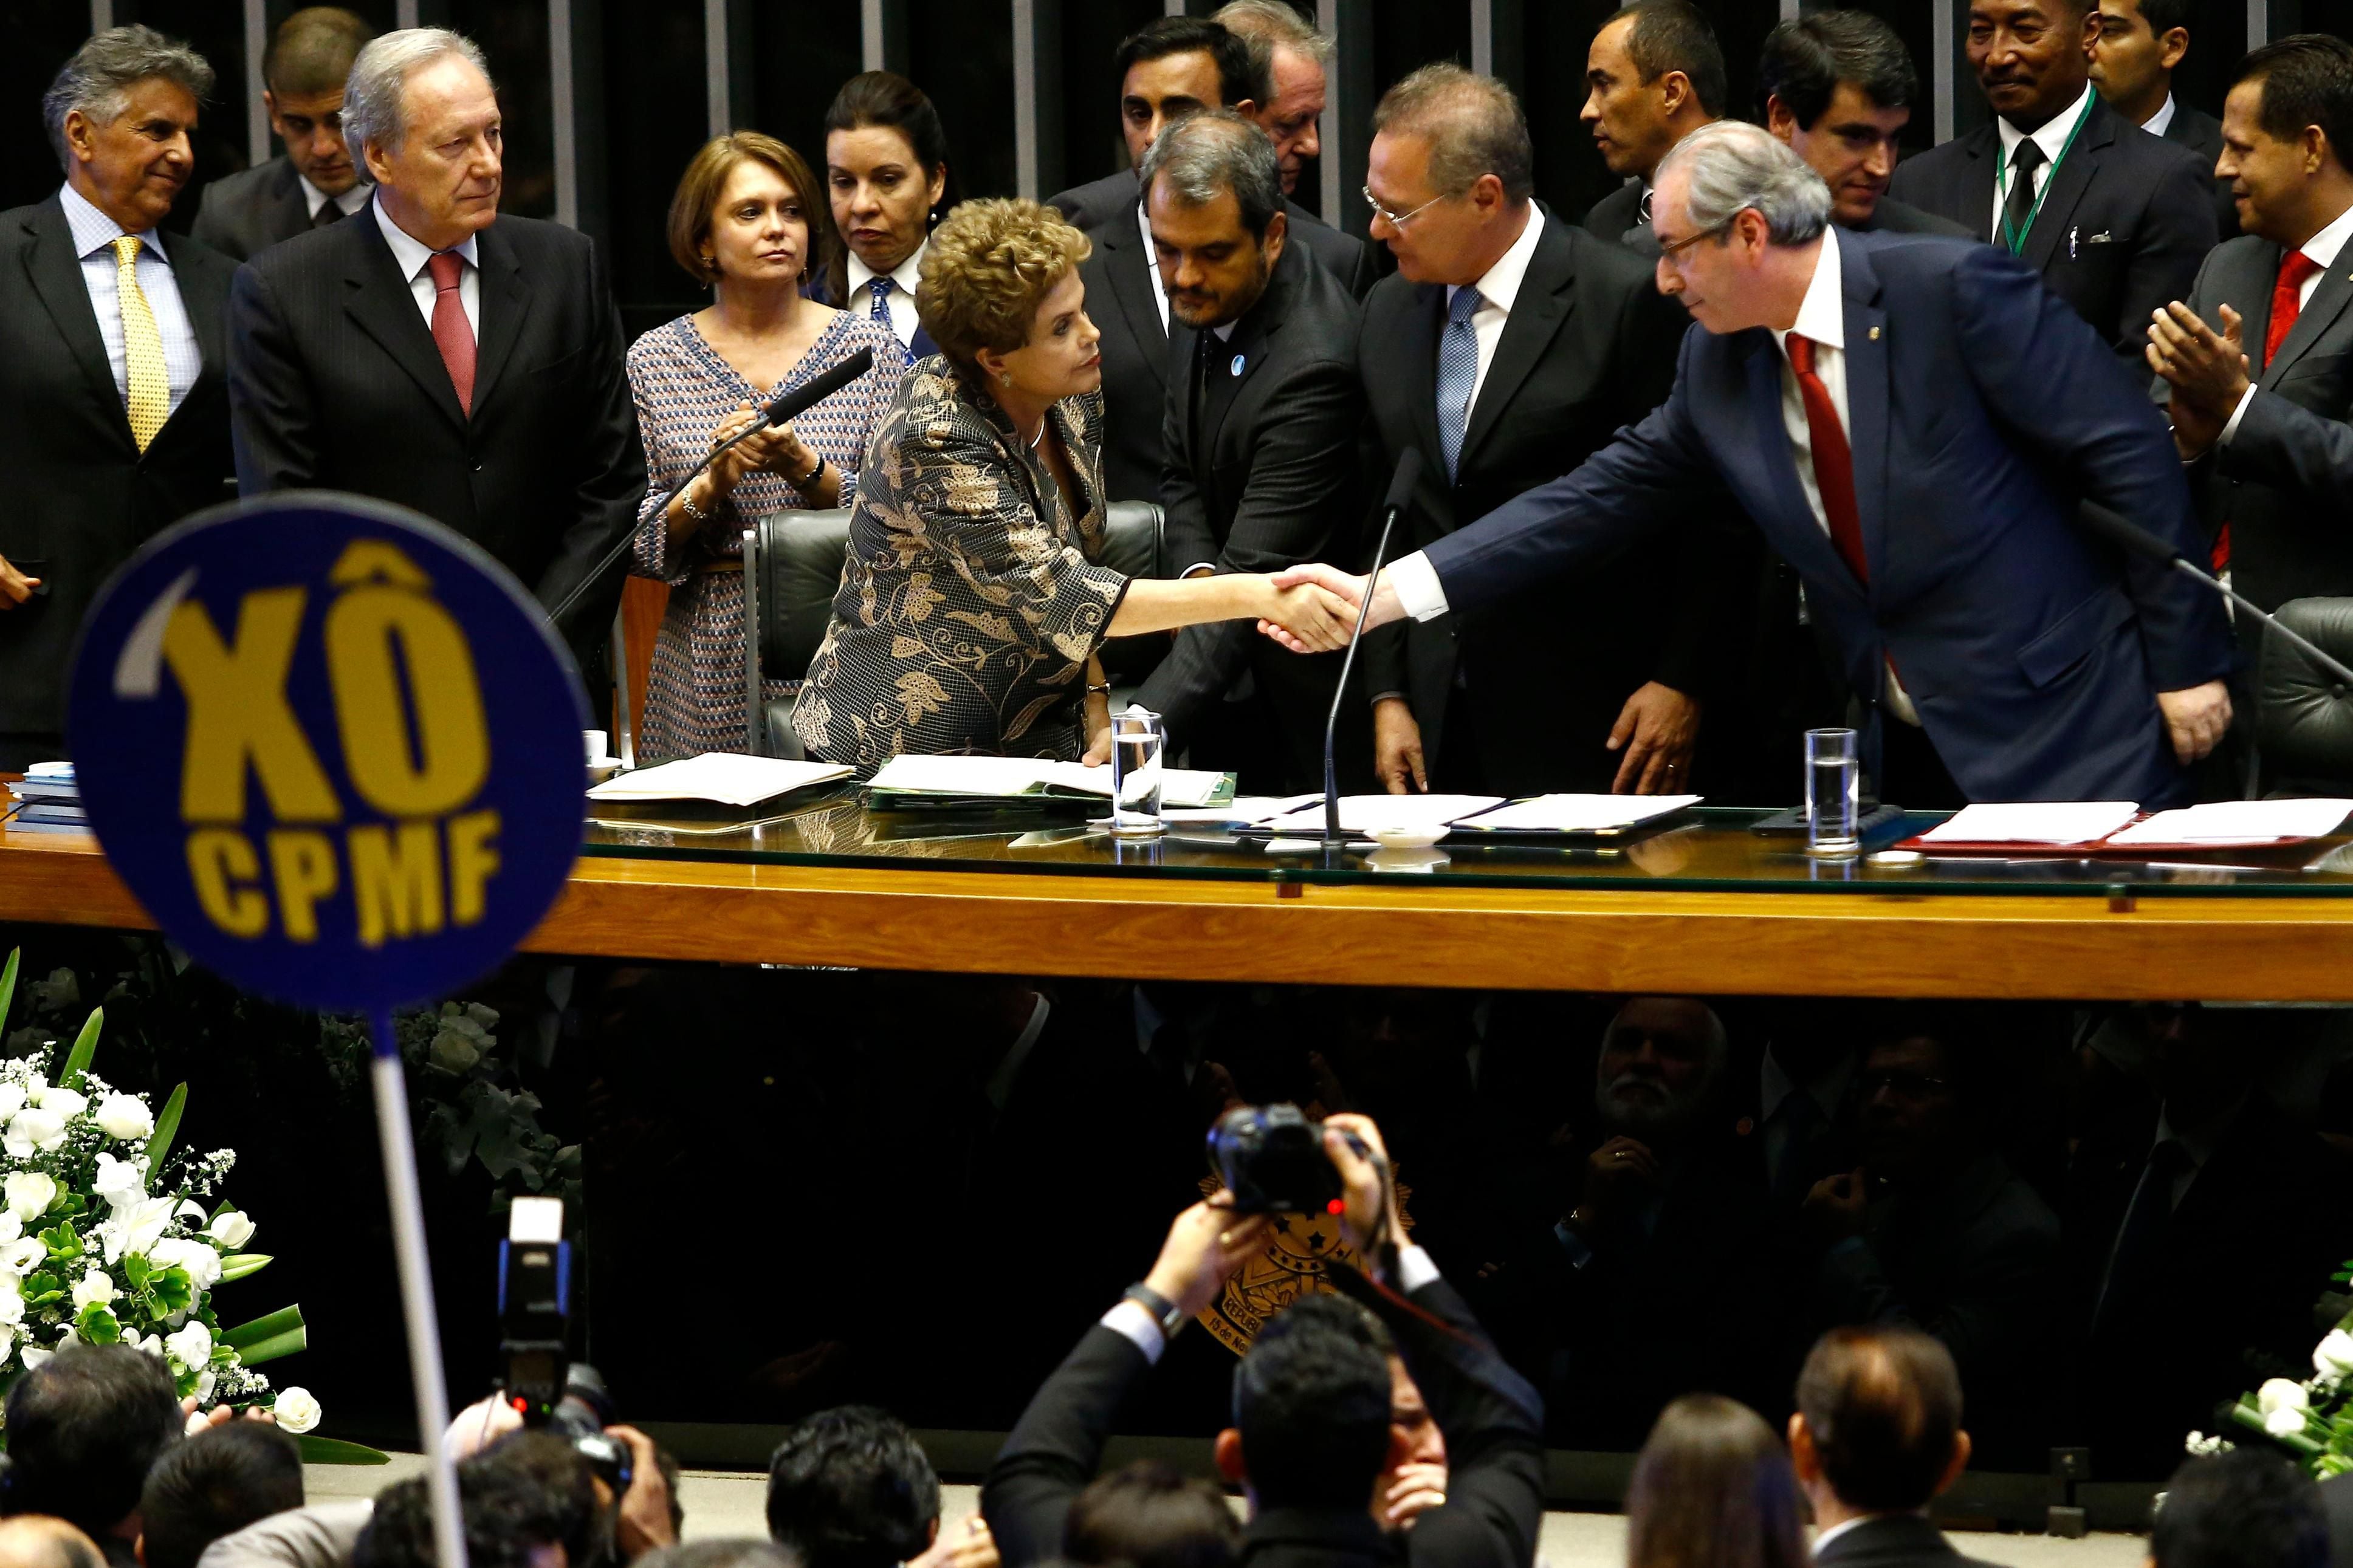 Com pauta focada na infraestrutura, o governo <b>Dilma</b> enfrentou resistência de grupos econômicos e dissensões internas dos partidos da coalizão